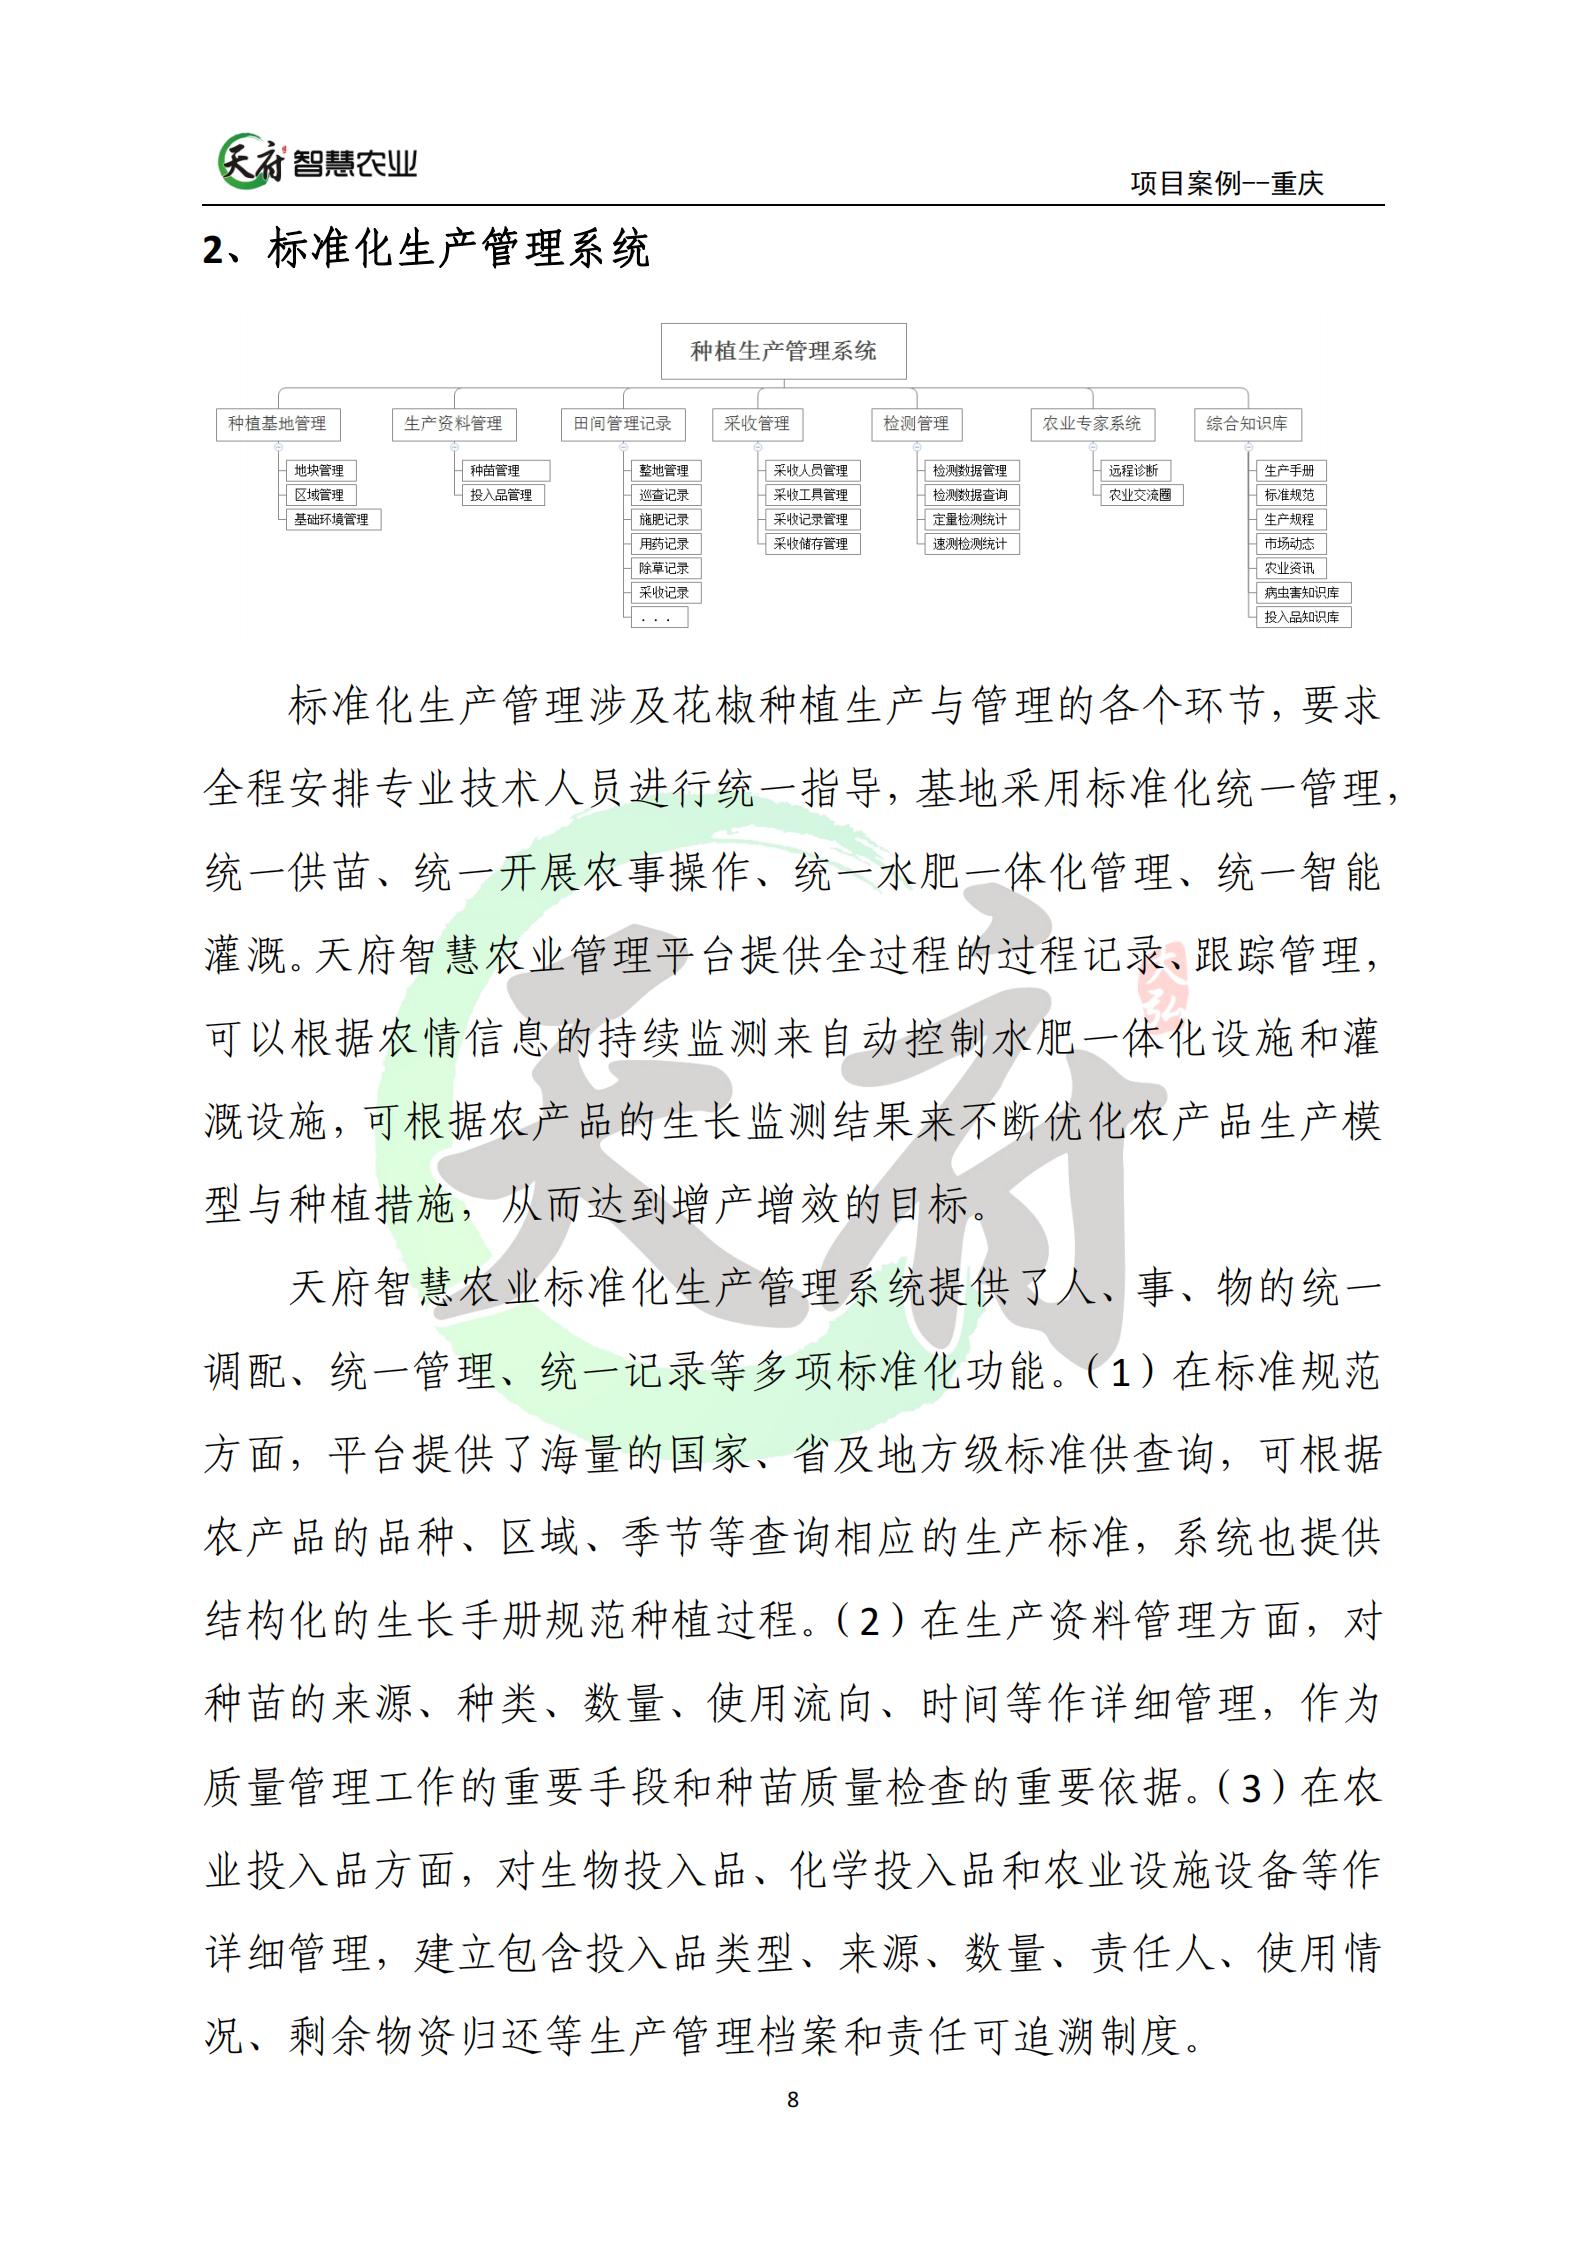 案例7：重庆数字农业花椒示范基地_08.jpg